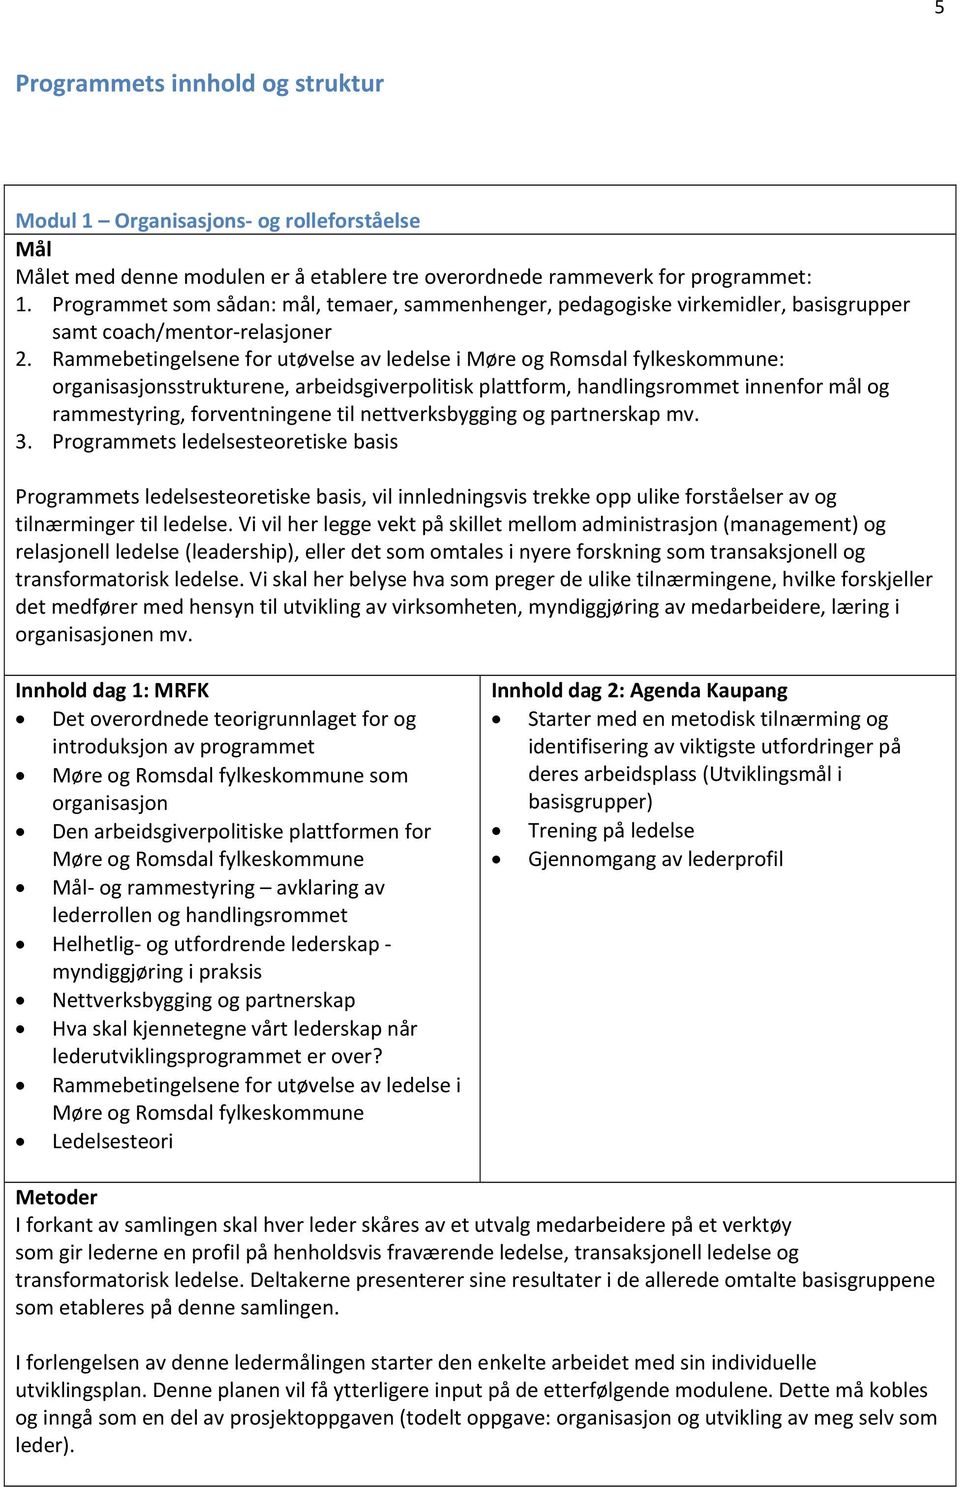 Rammebetingelsene for utøvelse av ledelse i Møre og Romsdal fylkeskommune: organisasjonsstrukturene, arbeidsgiverpolitisk plattform, handlingsrommet innenfor mål og rammestyring, forventningene til